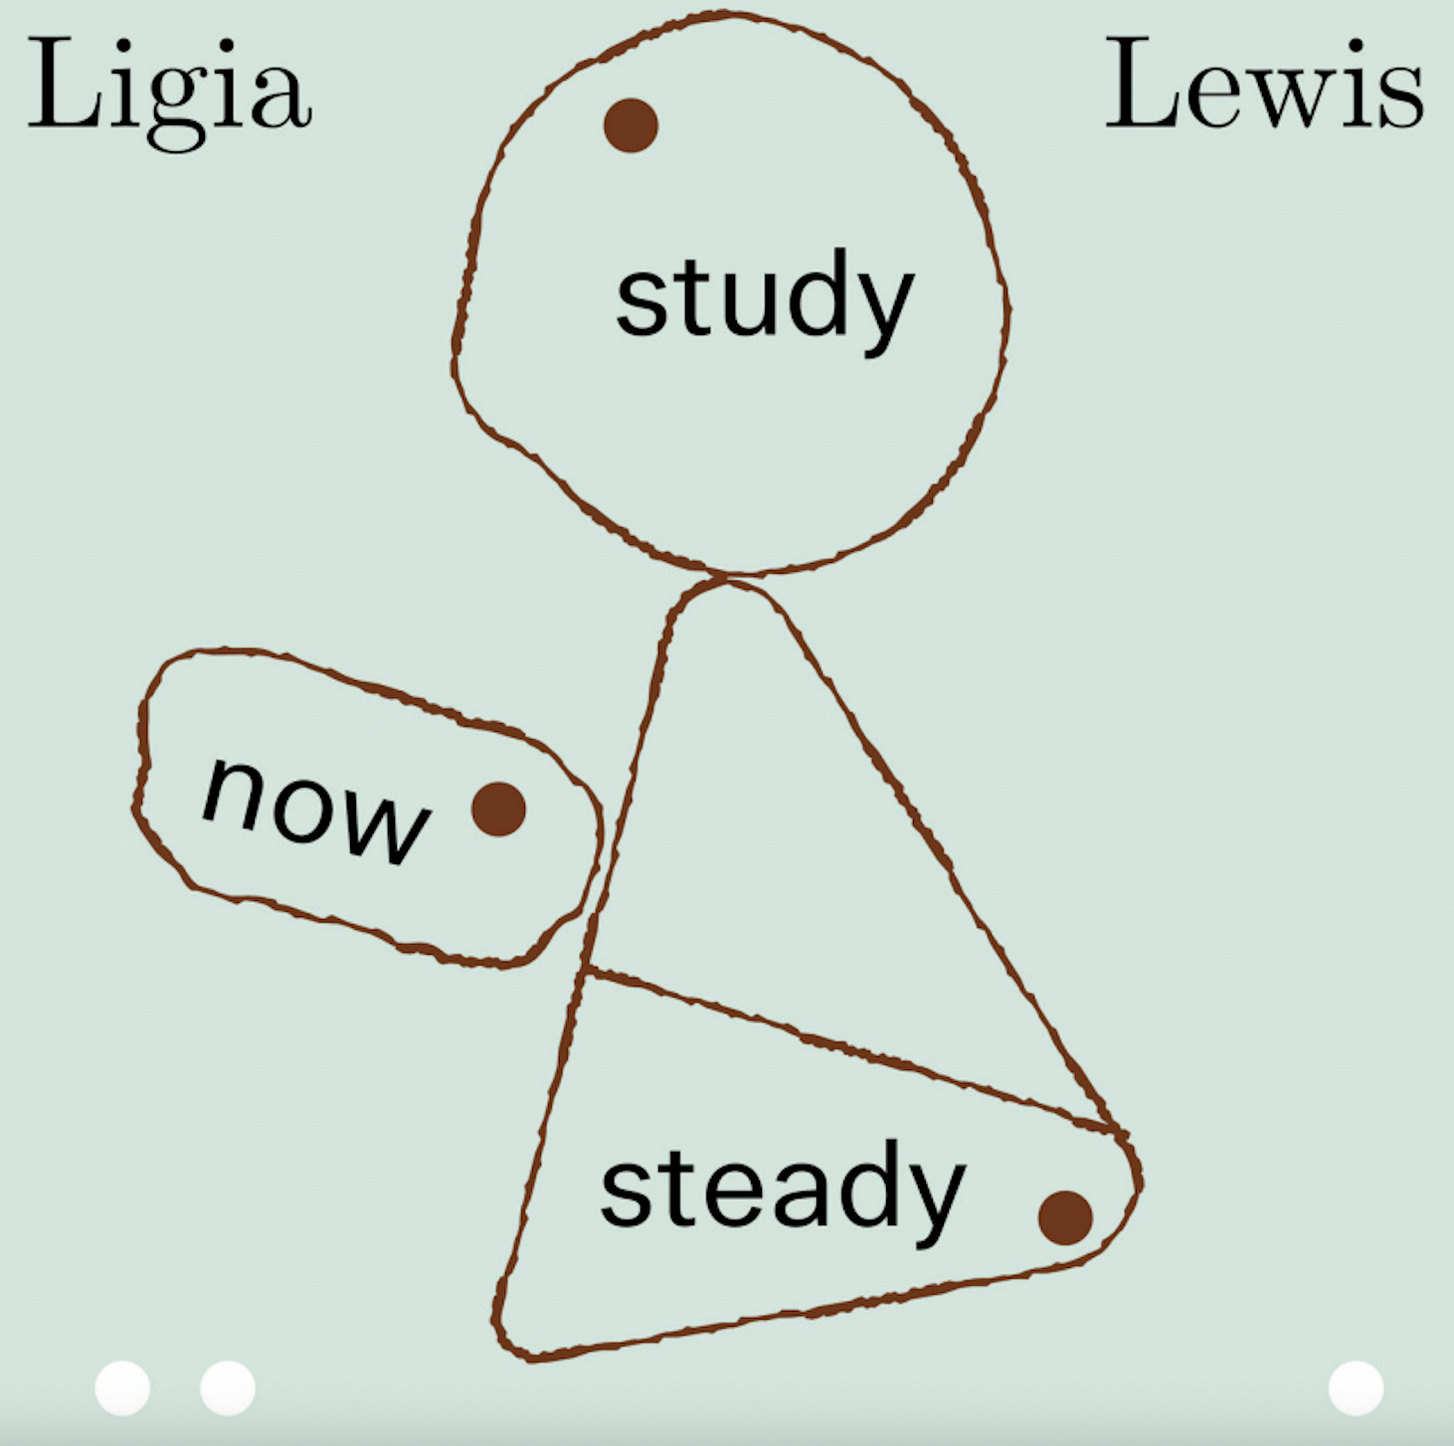 Ligia Lewis: study now steady